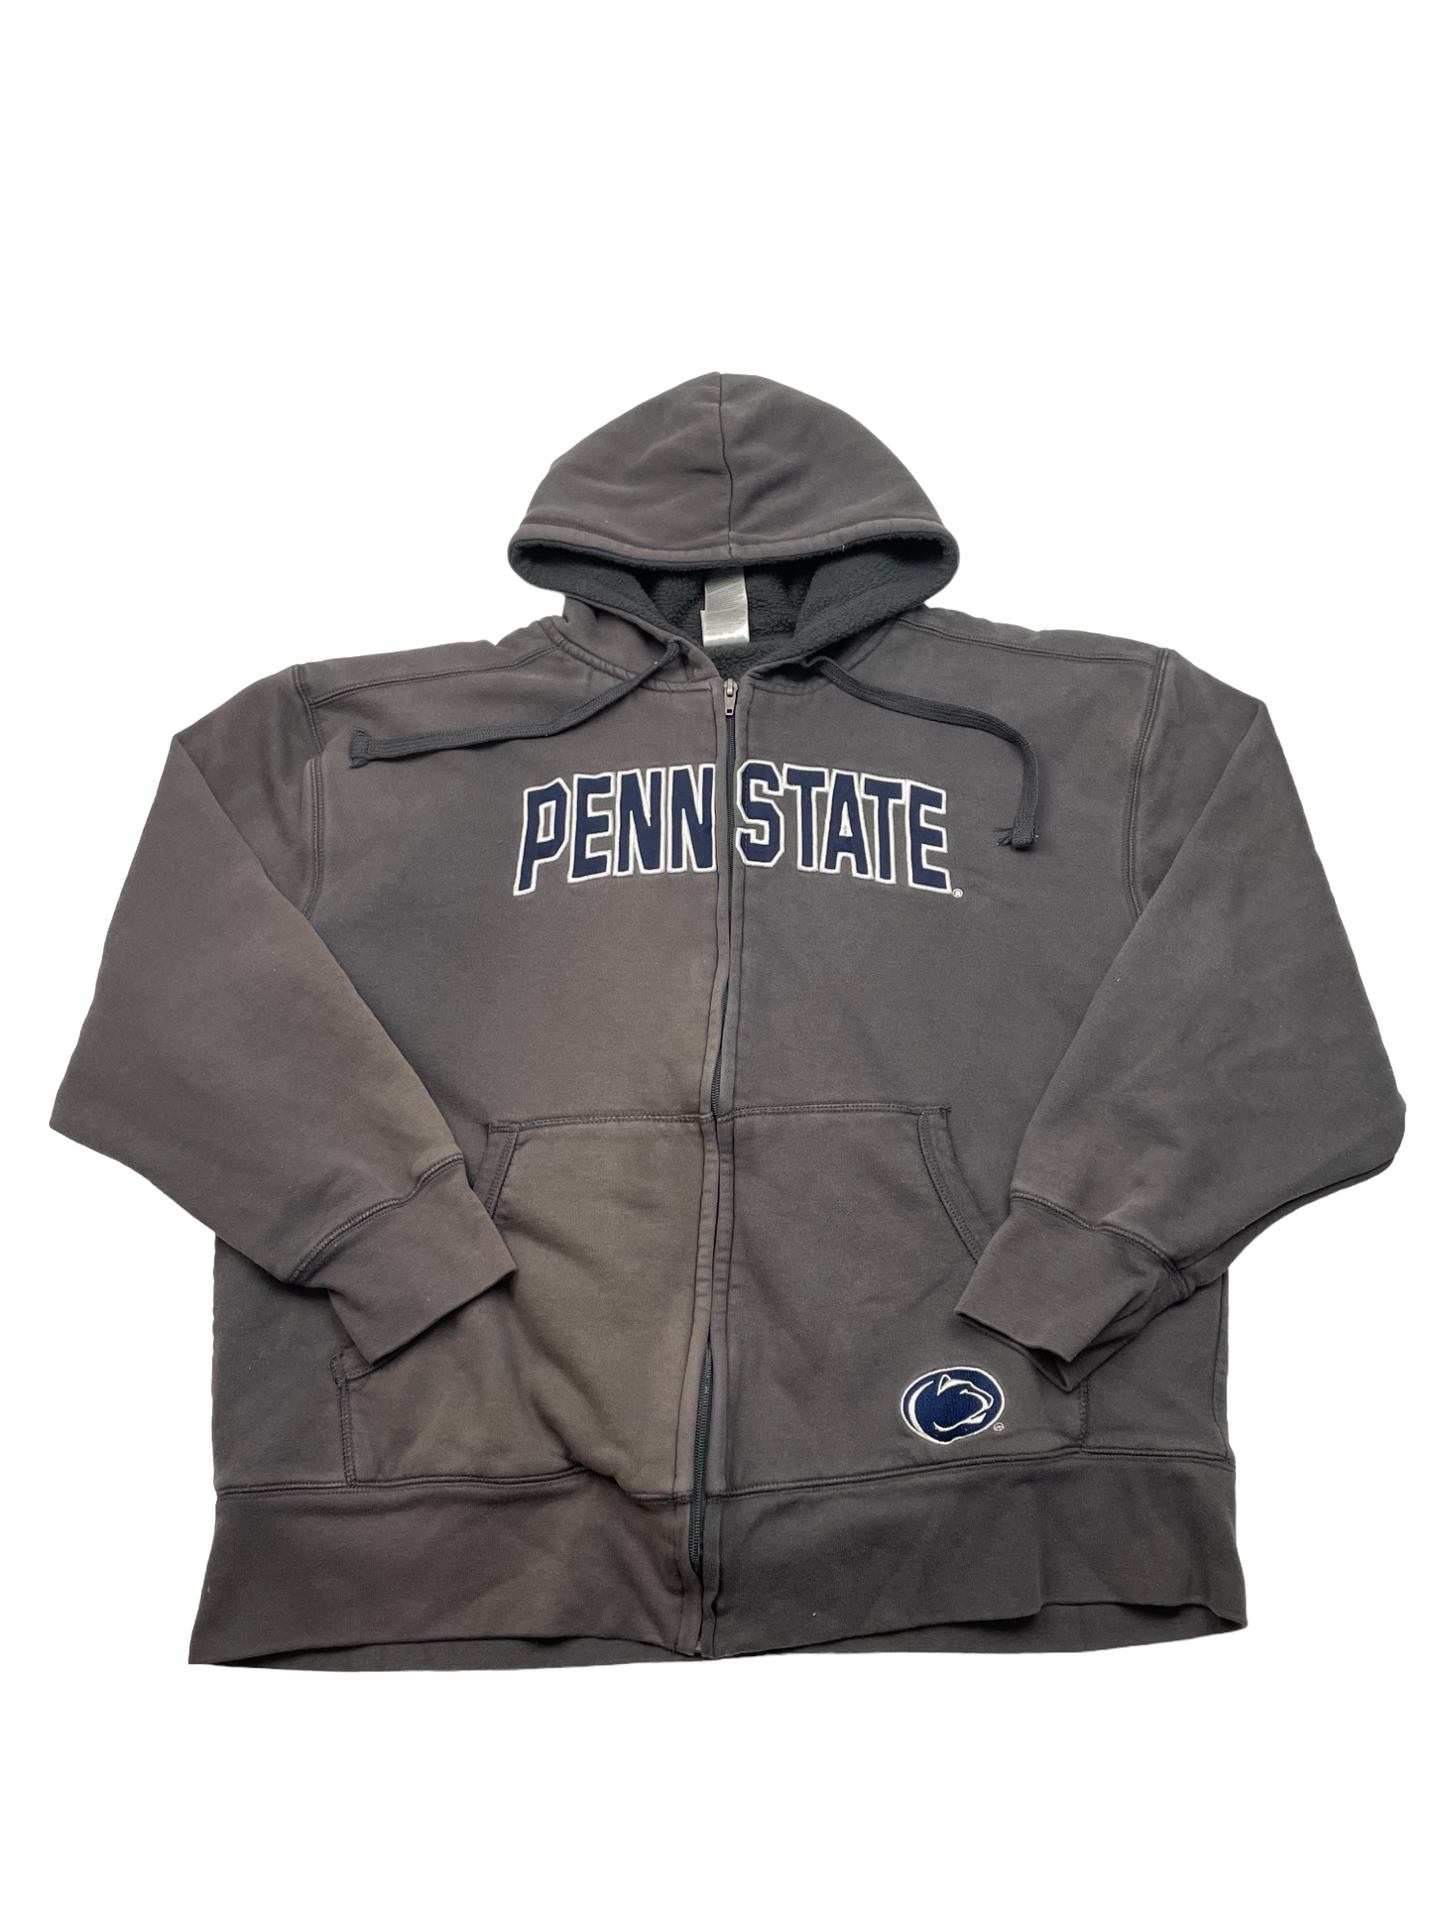 Penn State Grey Hoodie Zip Up